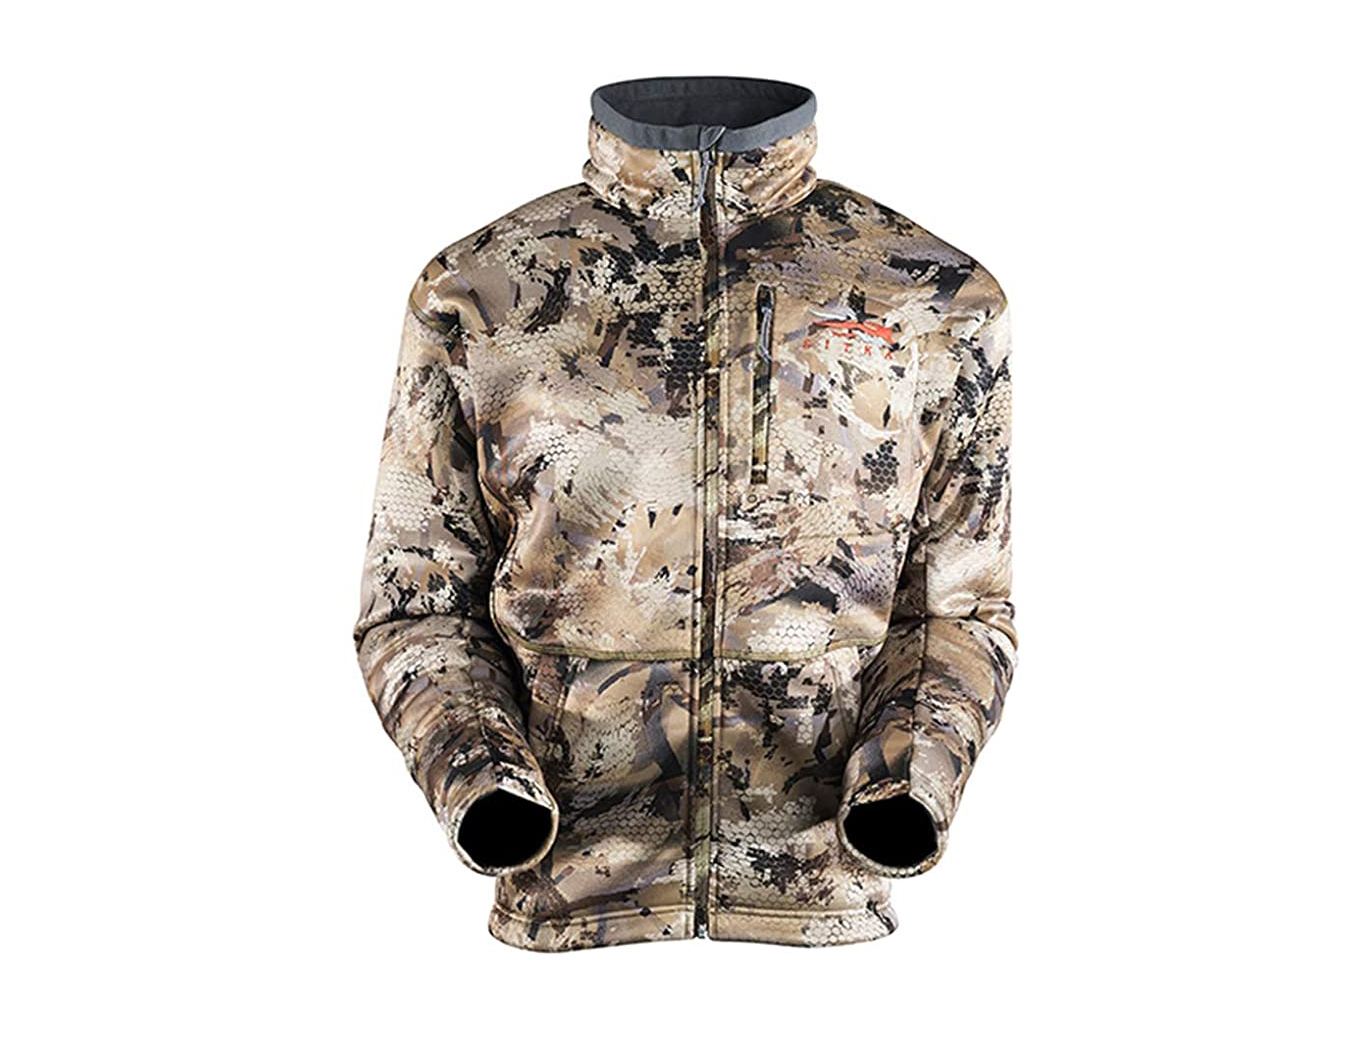 warmest duck hunting jacket